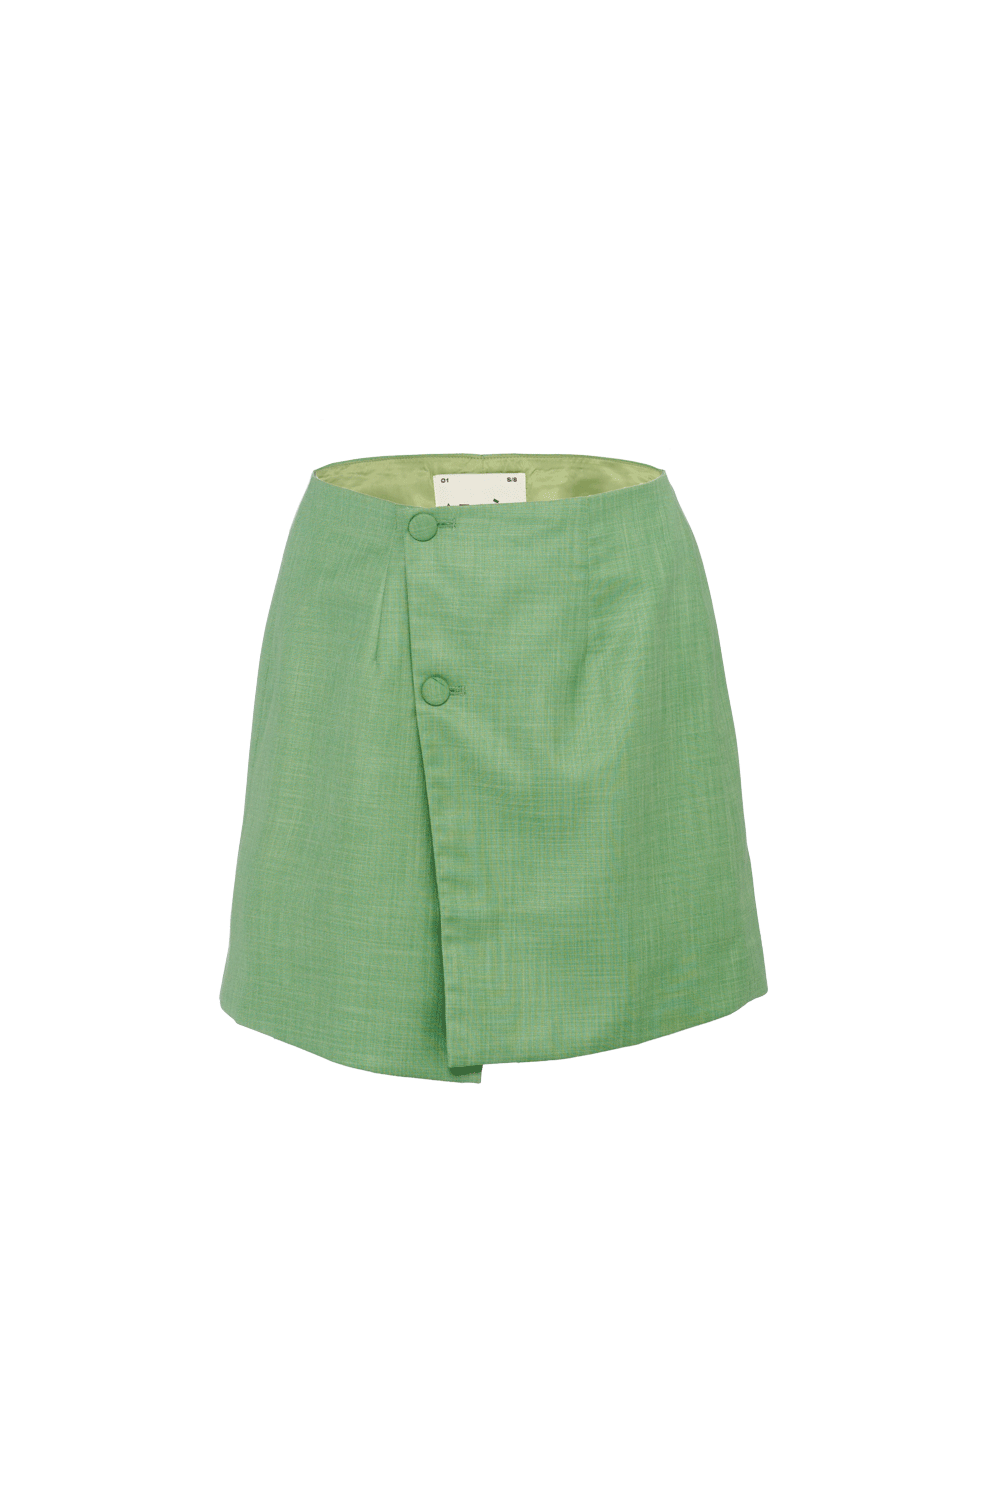 003 Skirt